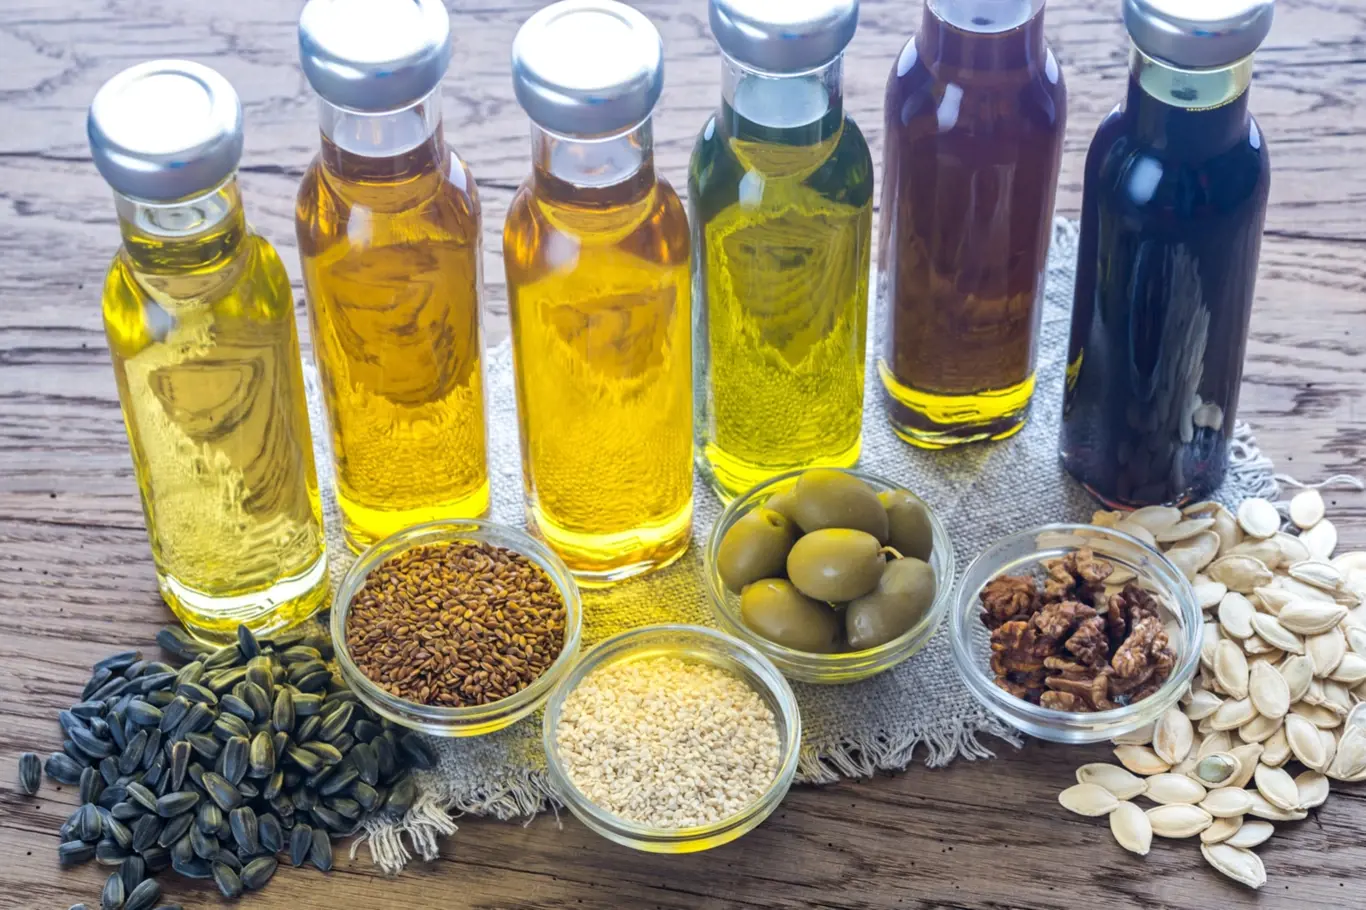 Olivový, sezamový, sójový, arašídový a mandlový olej jsou ideální do zdravé kuchyně. Ochrání vás před vysokým cholesterolem a dalšími civilizačními chorobami.